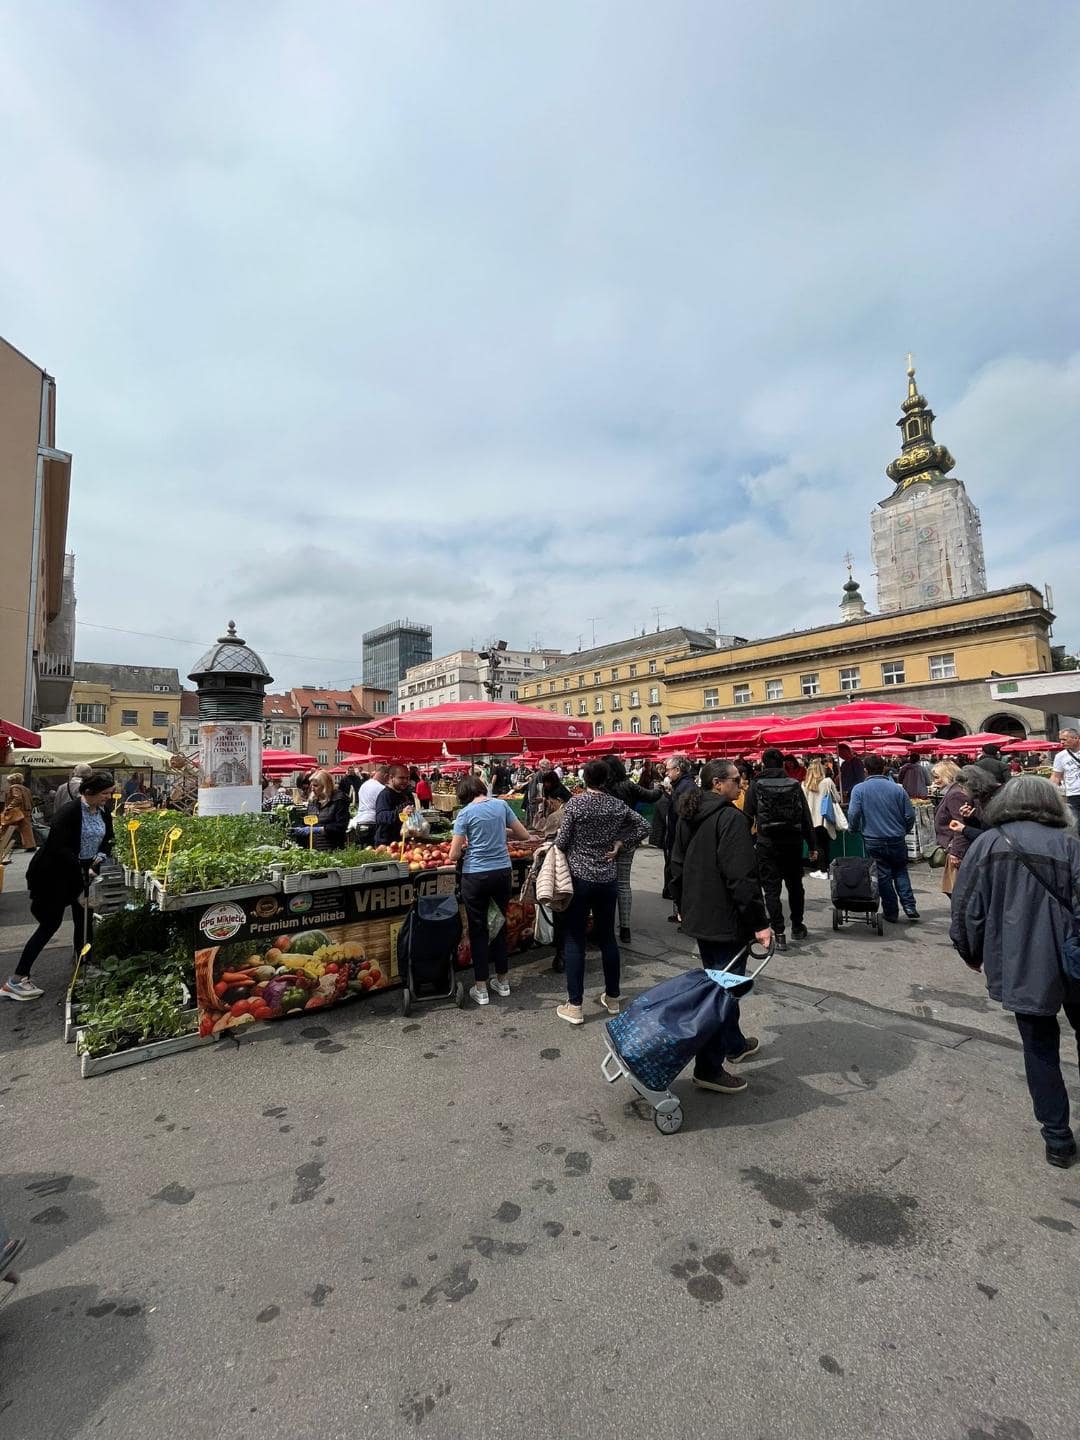 Najväčší predaj ovocia, zeleniny, mäsa a rybacích výrobkov v Záhrebe na Dolac Markete. Všetky stánky majú červené dáždniky a v pozadí je kostol.